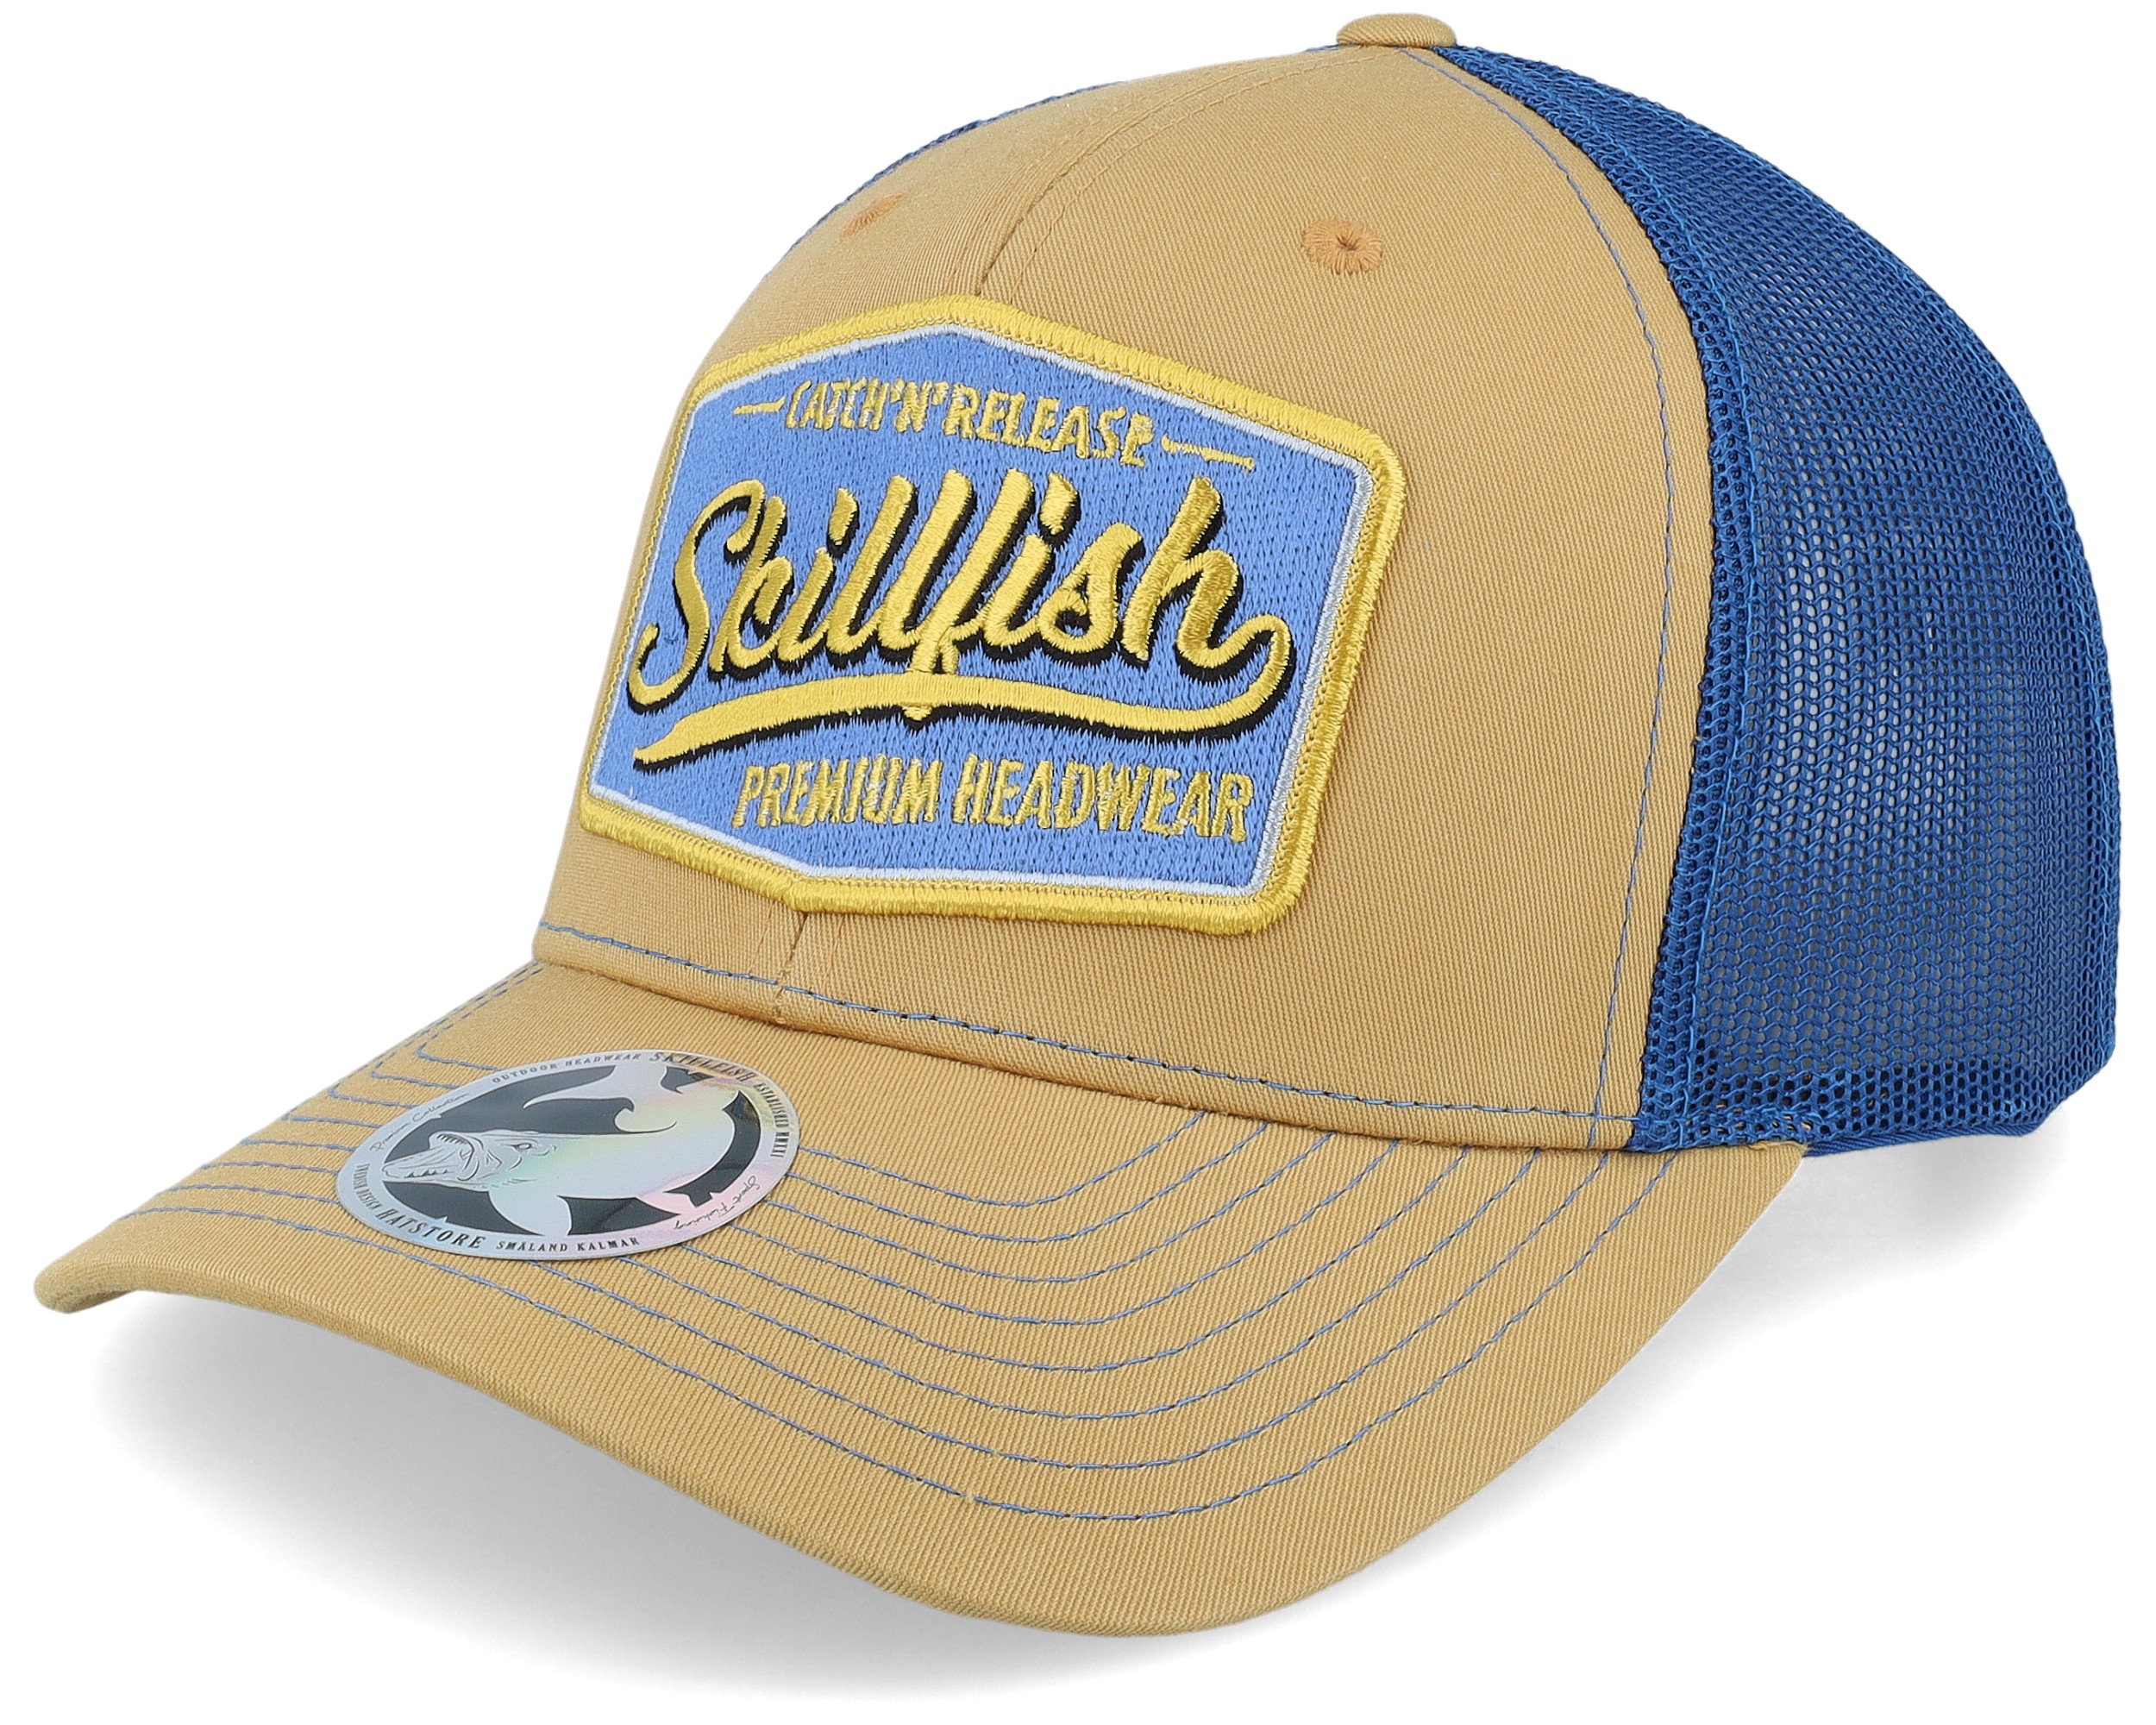 Skillfish - Beige Trucker Cap - Crimsonwave Logo 112 Split Biscuit/True Blue Trucker @ Hatstore